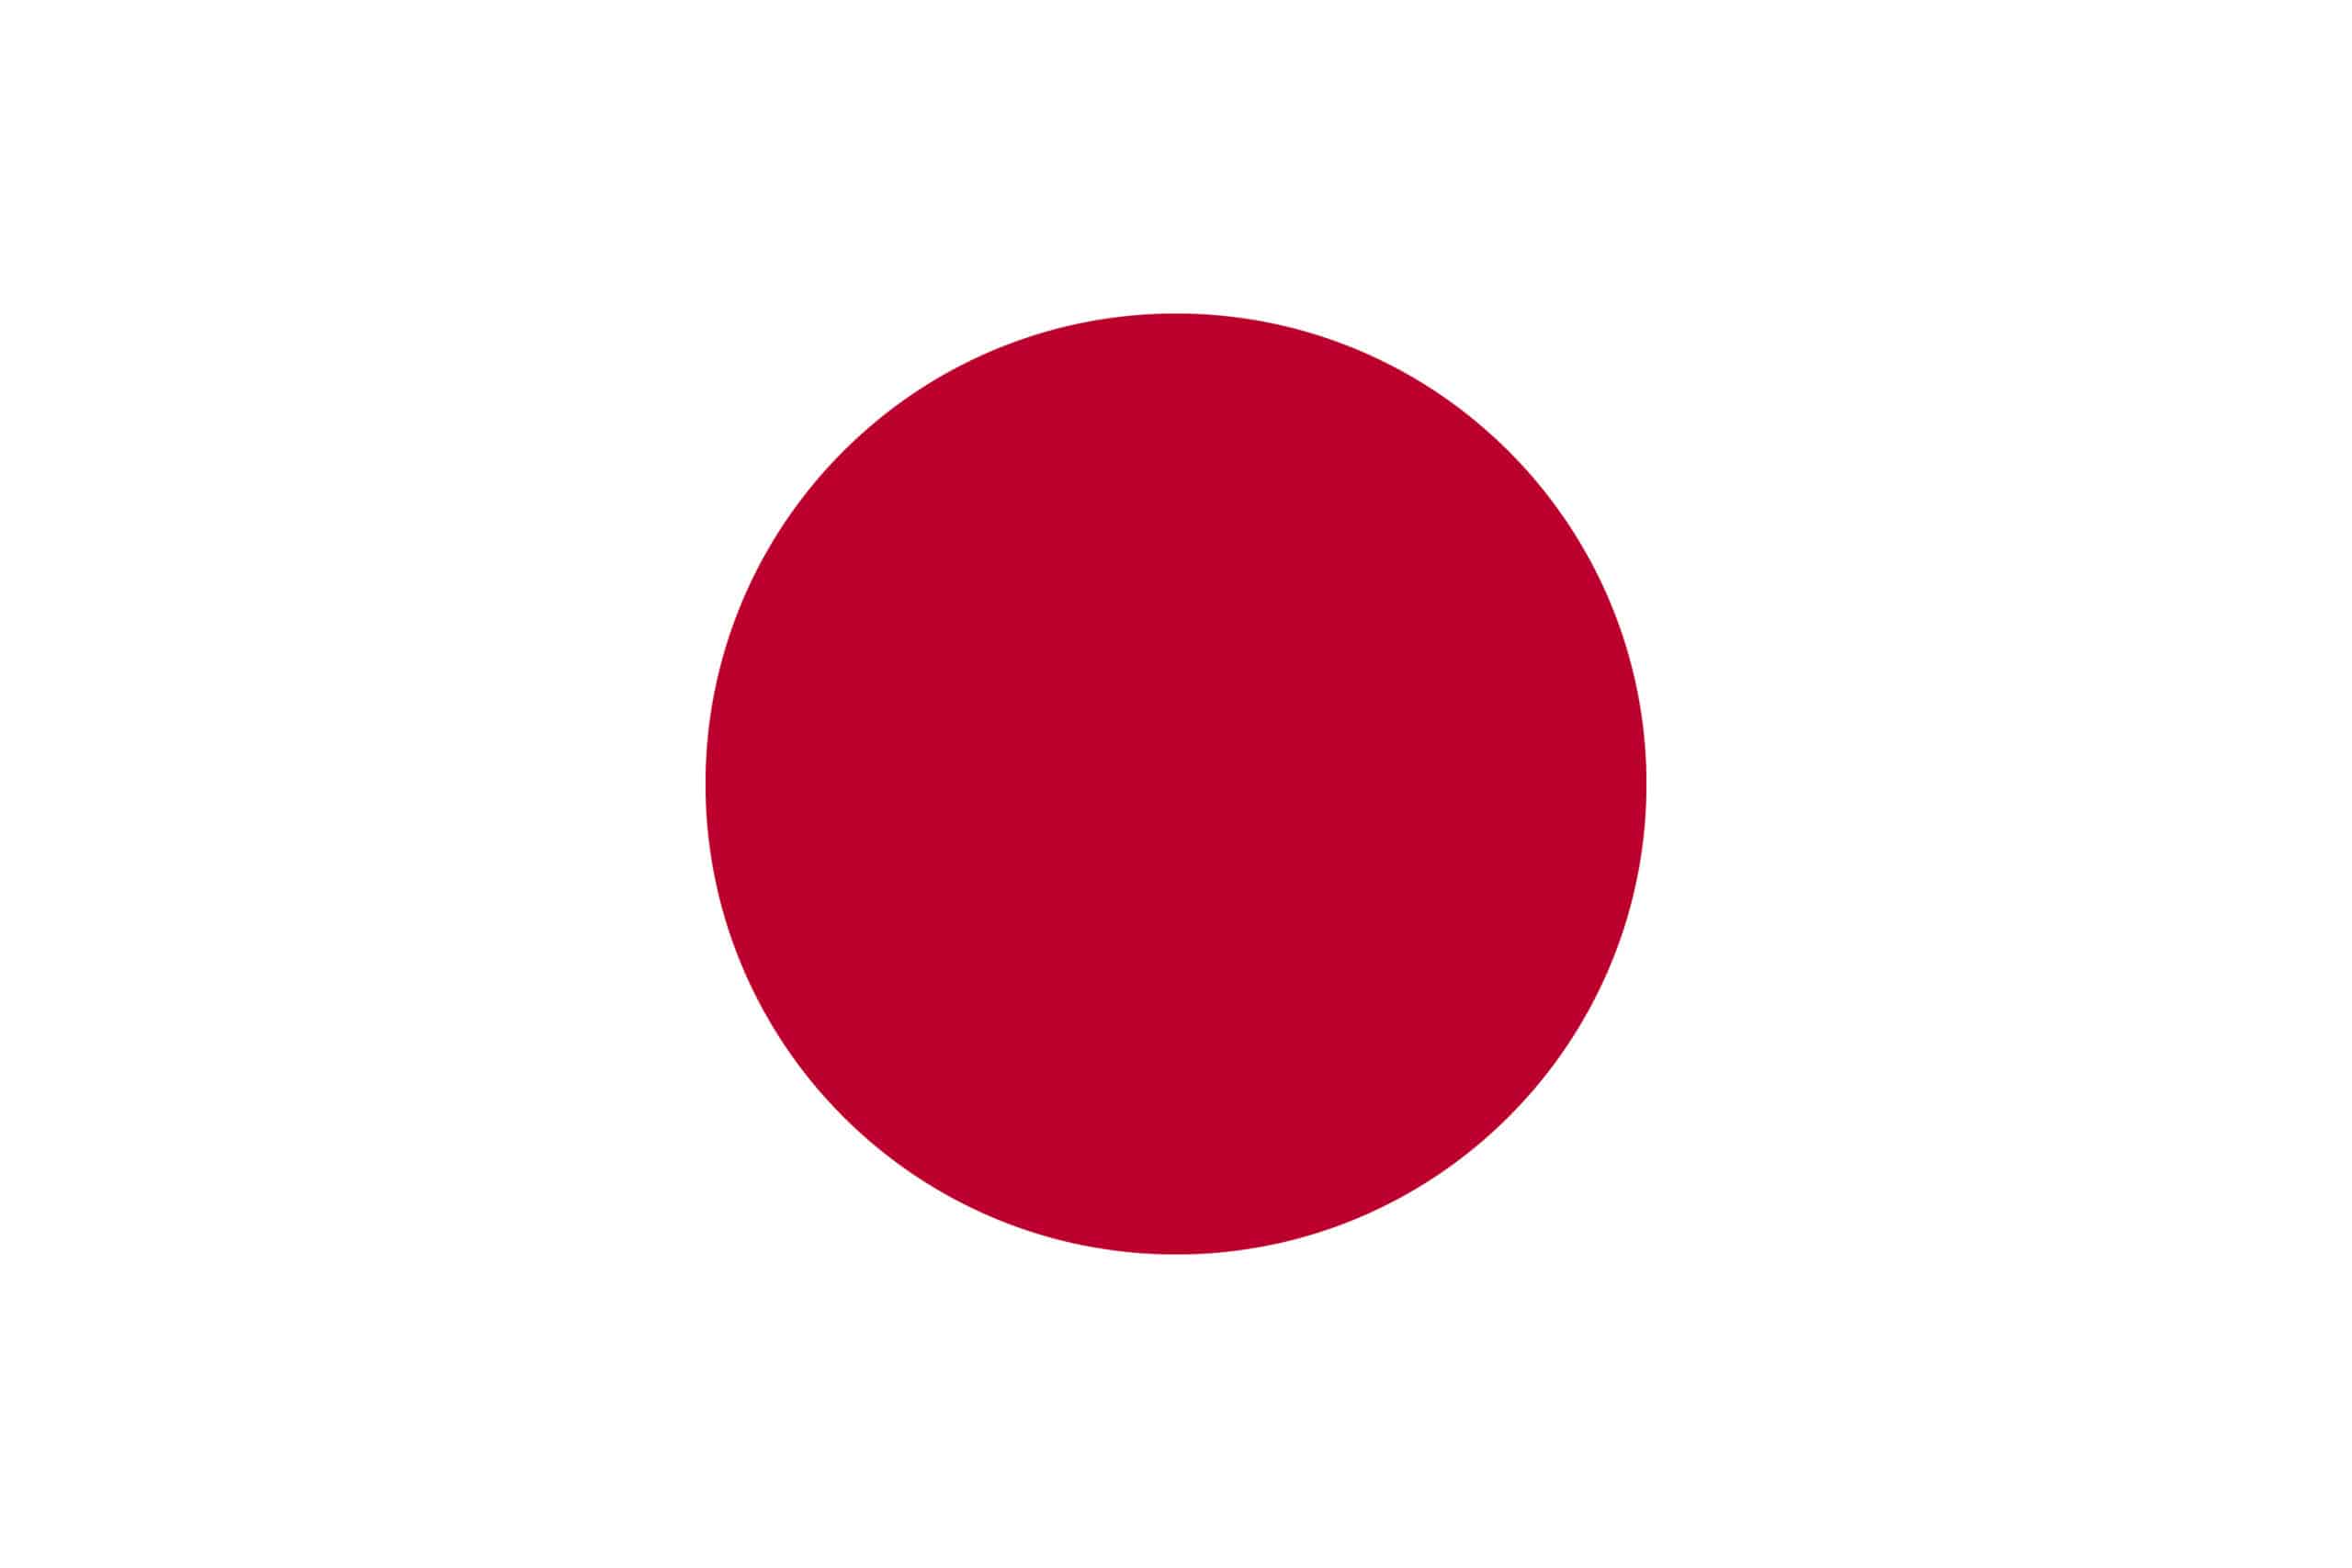 bandiera del Giappone